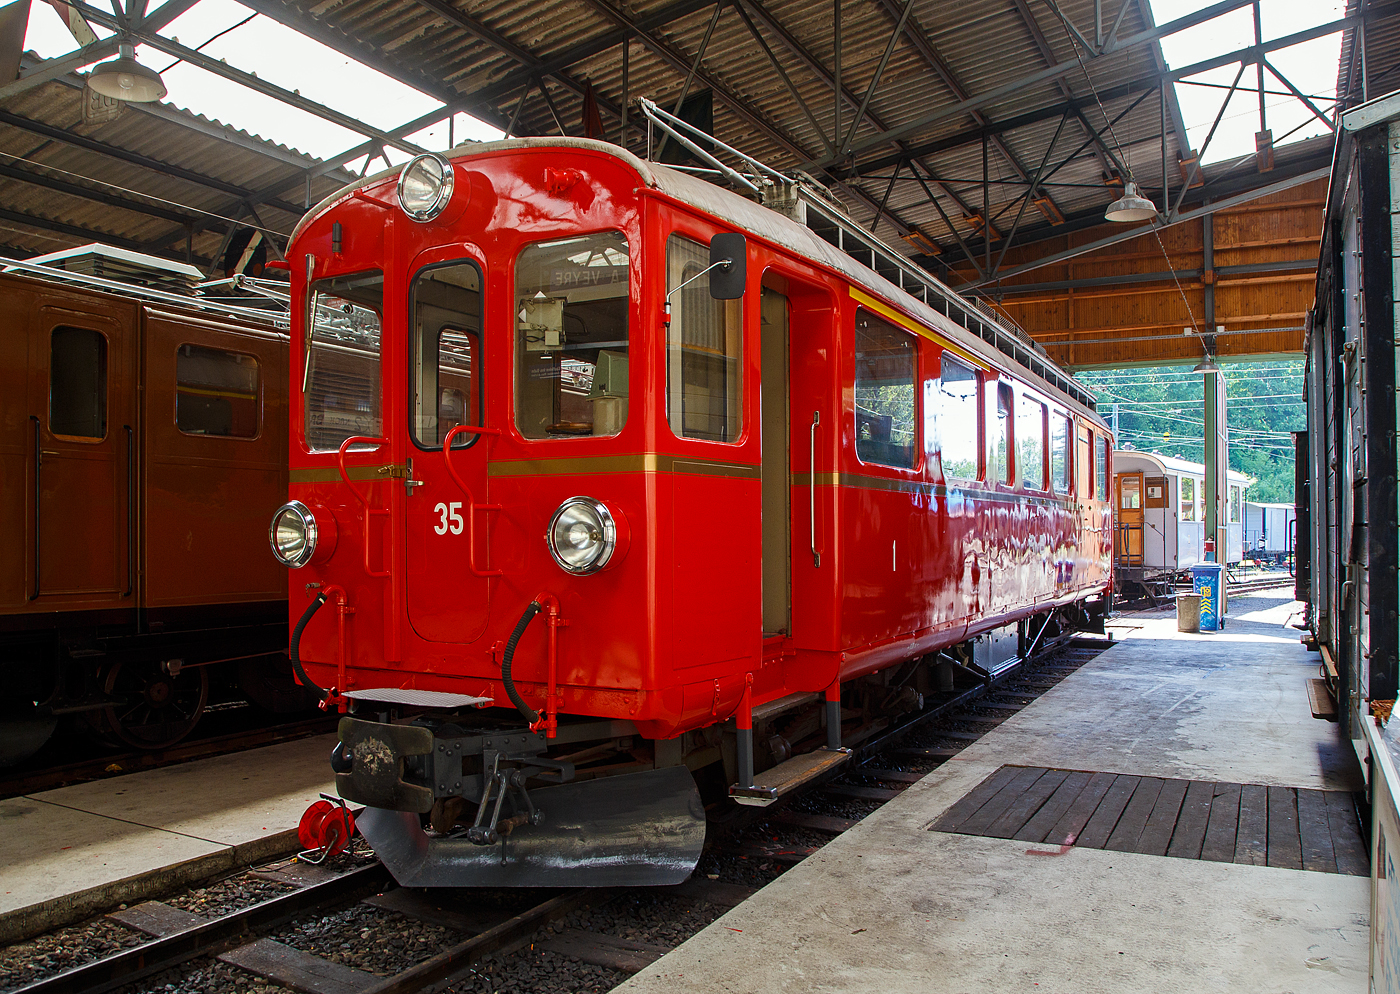 Der Bernina Bahn RhB ABe 4/4 I 35 mit dem Revisionsdatum 1.5.23 der Blonay-Chamby Bahn strahlt in alter Frische wie nach dem Neuanstich/Revision durch die RhB im Jahr 1962 (nach dem Umbau durch die RhB im Jahr 1949 war er erst grün/crème), hier am 27.05.2023 in der Halle der (BC) in Chaulin. Seit 2010 ist er im Bestand der Museumsbahn Blonay–Chamby. 

Der Triebwagen wurde 1908 von SIG (Elektrik von Elektrizitätsgesellschaft Alioth gebaut und als BB BCe 4/4 – 10 an die Berninabahn geliefert (angeschrieben war die Bezeichnung BCe⁴). Gegenüber den seinerzeit bevorzugten Grün- und Grautönen hoben sie sich die Triebwagen mit ihrem gelben Anstrich, schwarz-roter Schattenschrift und auffälligen roten Routentafeln deutlich ab. 

Mit der Berninabahn übernahm die RhB 1943 auch deren alternden Fahrzeugbestand. Mit bis zu 35 Betriebsjahren war zwar das Lebensende der Fahrzeuge noch nicht erreicht, aber deren Leistungsfähigkeit ließ zu wünschen übrig. Doch die Fahrzeuge stellten nicht den einzigen Investitionsbedarf dar. Deshalb wurde auf den Kauf neuer Triebwagen verzichtet, hingegen begann die RhB ab 1946, das vorhandene Rollmaterial in den eigenen Werkstätten in Landquart und Poschiavo zu modernisieren. Bei allen 17 Triebwagen wurden die bisher unter dem Wagenboden angeordneten Anfahr- und Bremswiderstände auf das Dach versetzt, teilweise die Seitenwände nach unten verlängert (Schürzen) und die Kastenbleche verschweißt. Ein Pantograph ersetzte einen der beiden veralteten Lyrabügel.

Neun Triebwagen erhielten auch eine neue elektrische Ausrüstung, die Leistung erhöhte sich von 220 kW auf 395 kW, bei den späteren Umbauten sogar auf 440 kW. Damit konnte die zulässige Anhängelast auf 40 t verdoppelt und die Höchstgeschwindigkeit von 45 km/h auf 55 km/h erhöht werden. Die umgebauten Fahrzeuge erhielten die neuen Nummern 30–38, die TW 30 bis 34 wurden zu Zweispannungsfahrzeugen umgebaut (1000 V = für die Berninabahn, sowie 2400 V = für die Chur–Arosa-Bahn), die TW 35 bis 38 blieben Einspannungsfahrzeuge (1000 V DC) für die Berninabahn. Als 1956 die dritte Klasse abgeschafft wurde, wurden die BCe 4/4 zu ABe 4/4 und die BCFe 4/4 zu ABFe 4/4, seit 1961 ABDe 4/4.